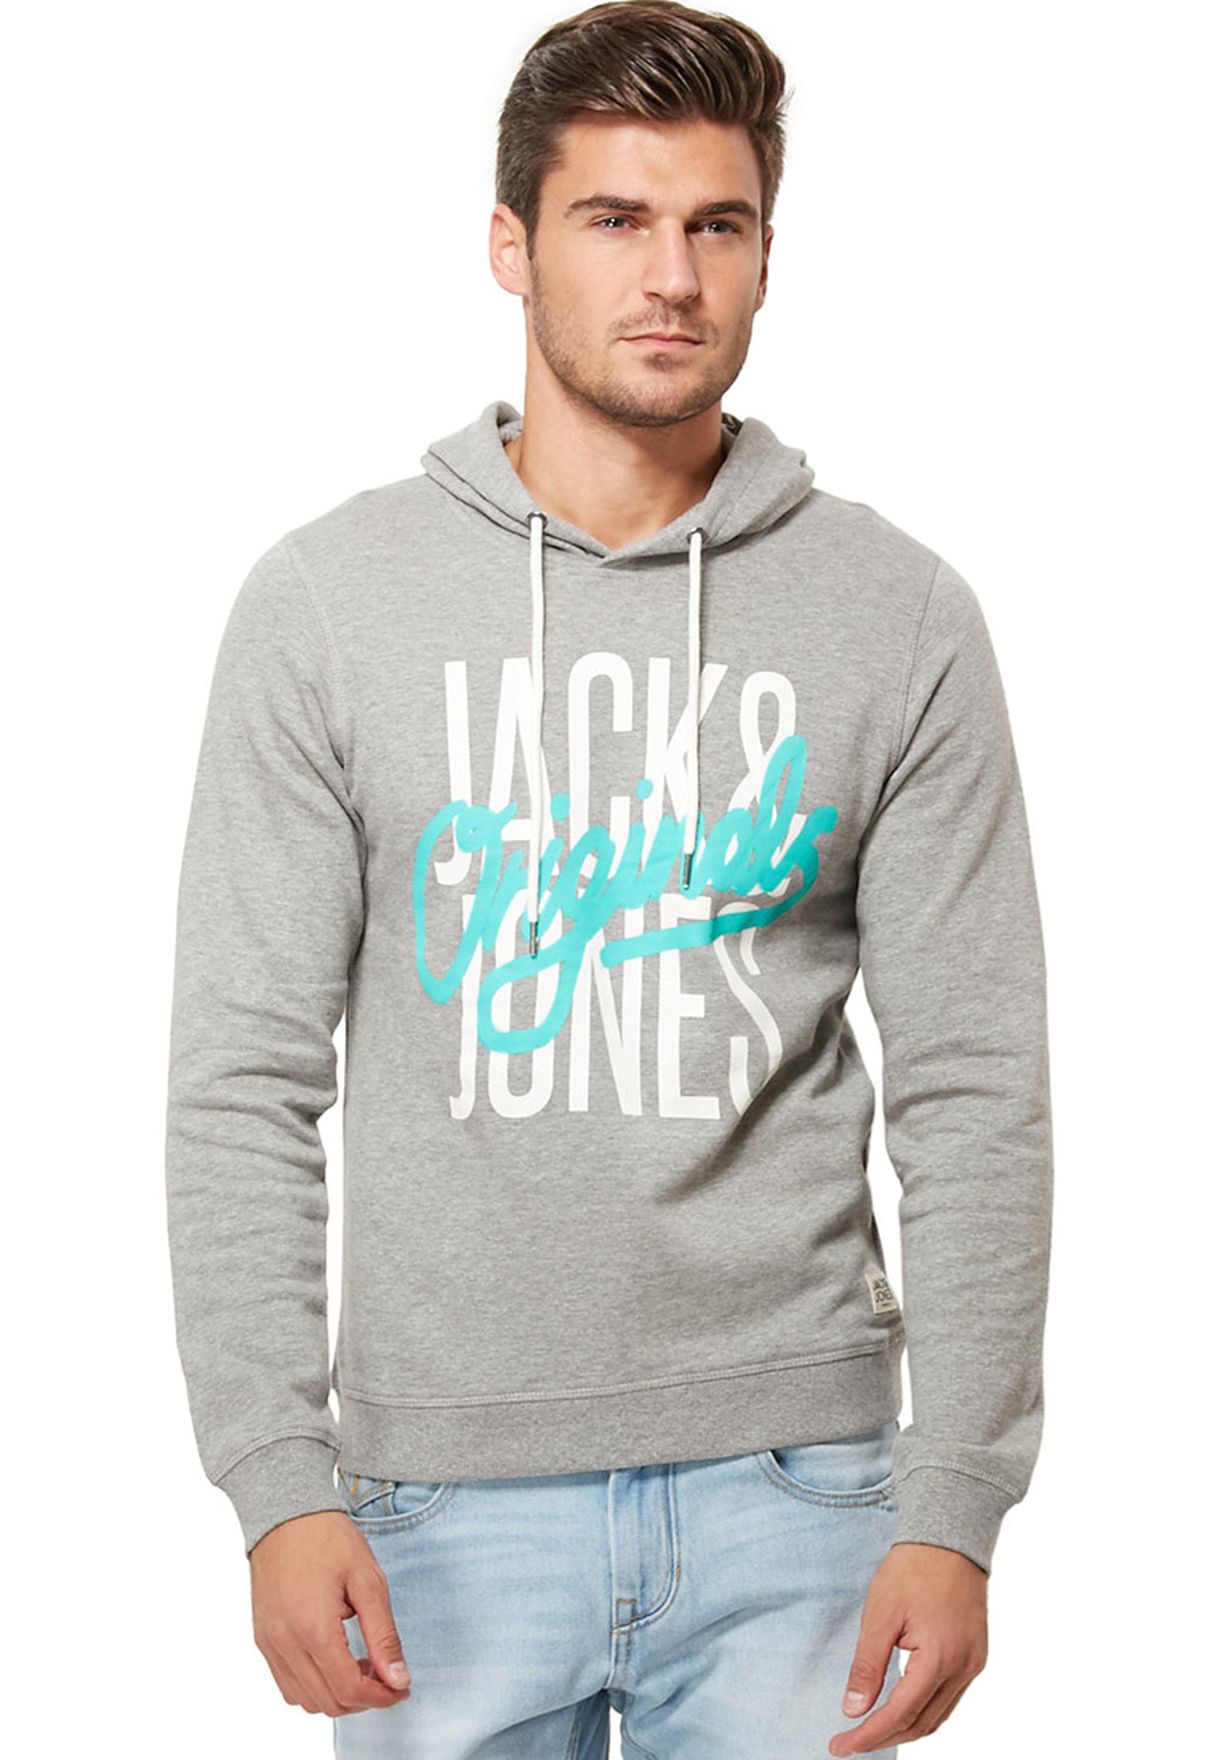 Jack And Jones Originals Sweatshirt - Jack Jones Sweatshirts 25 Items ...